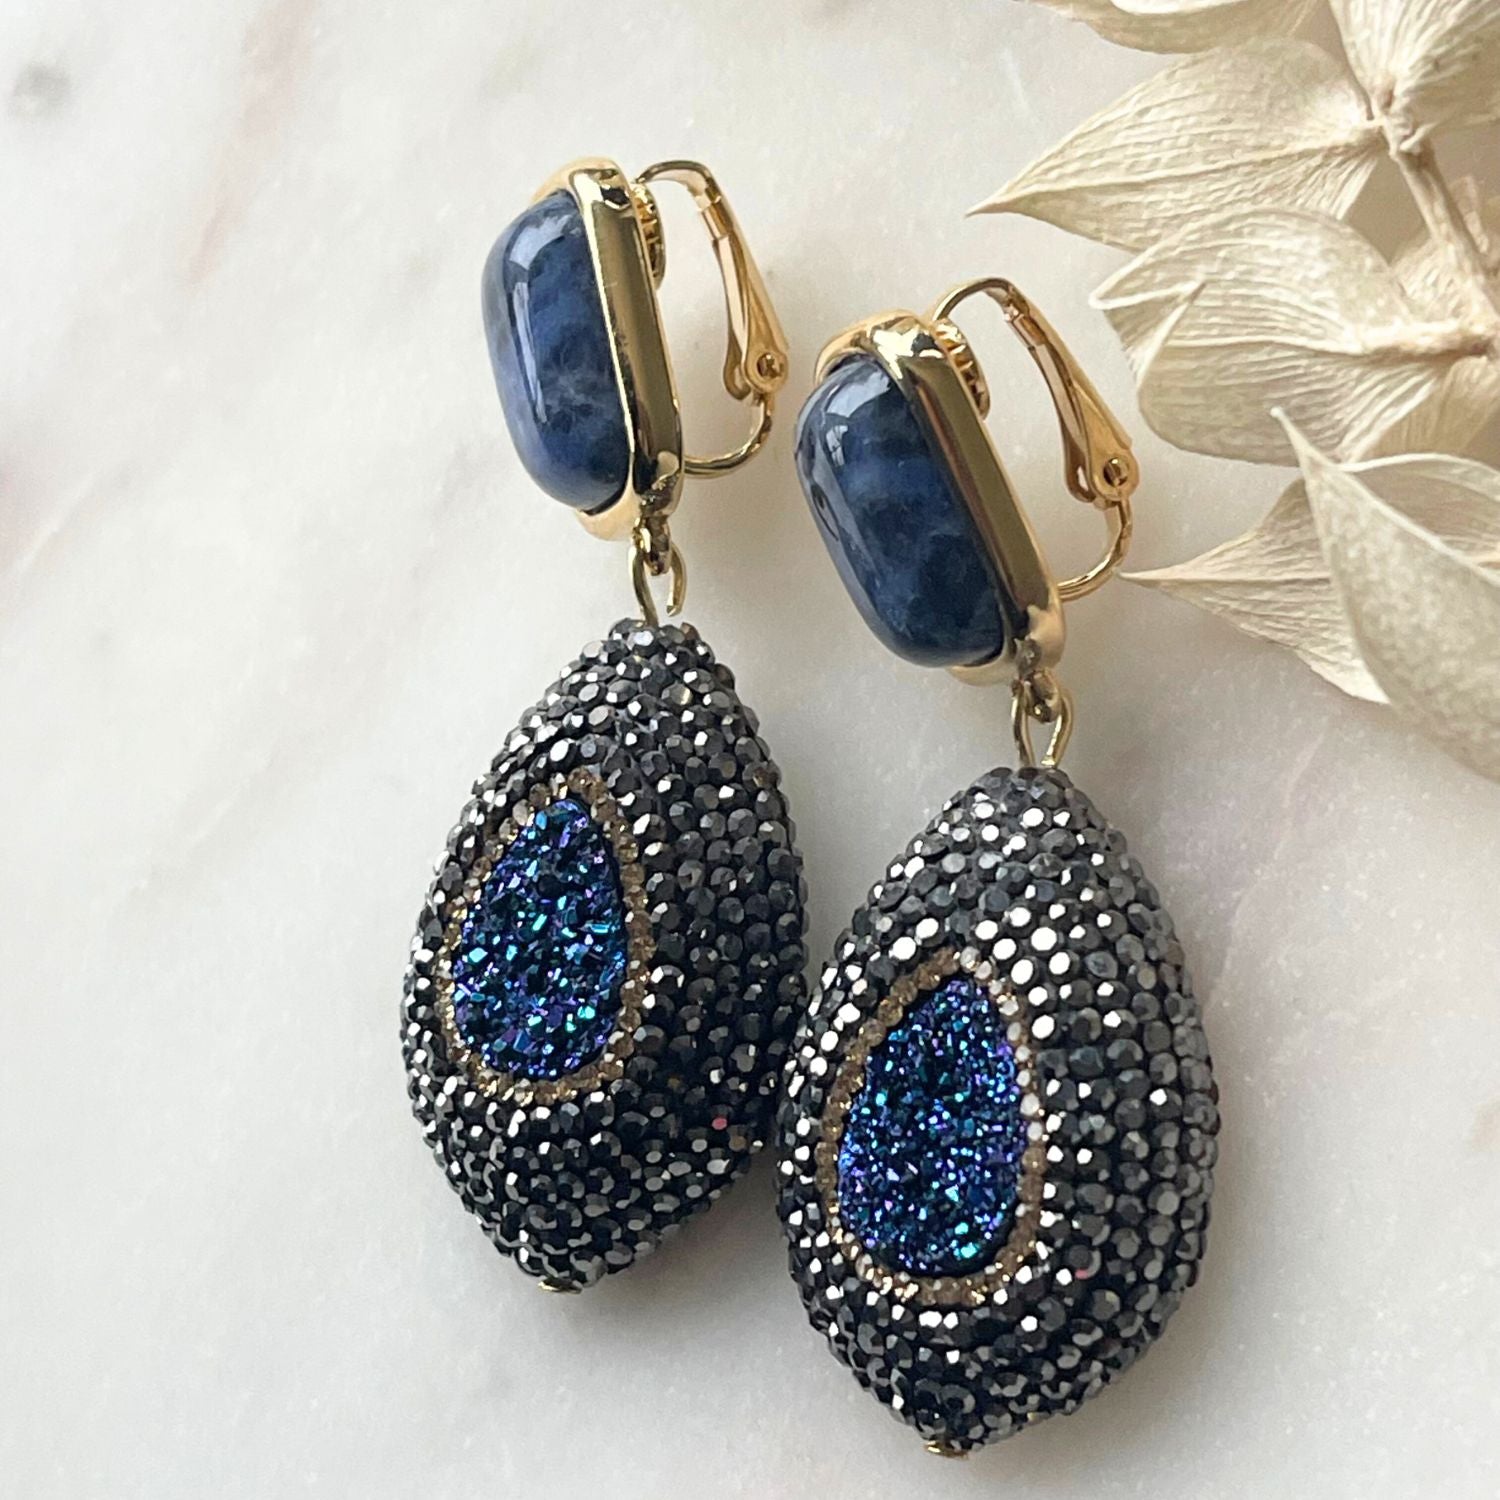 Elegante blaue Ohrringe mit Sodalith-Steinen und funkelnder Markasite. Perfekt für festliche Anlässe, verleihen sie subtile Raffinesse und zeitlose Schönheit. Der tiefblaue Sodalithstein bringt ruhige Eleganz, während die schimmernden Markassite-Details einen Hauch von Glamour hinzufügen